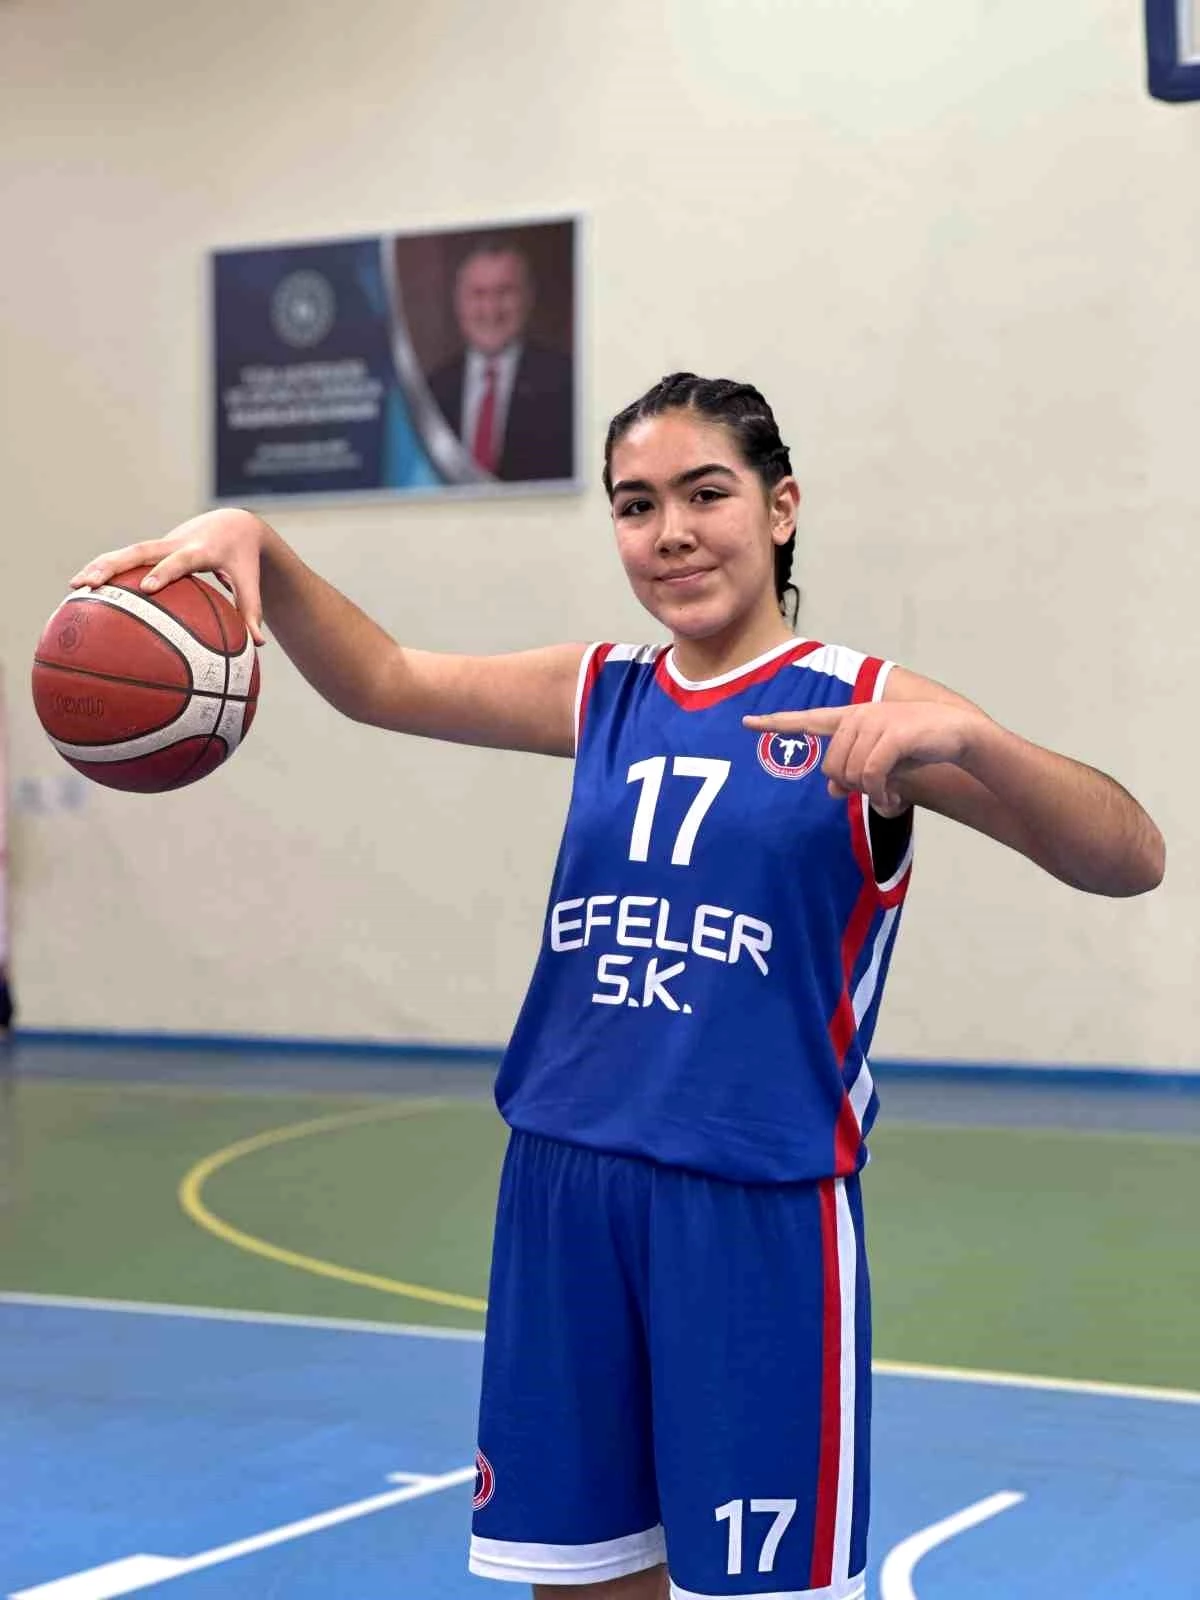 Ahmetli Spor Okulları Öğrencisi Şeyma Aydın, Başarıyla Takdir Ediliyor